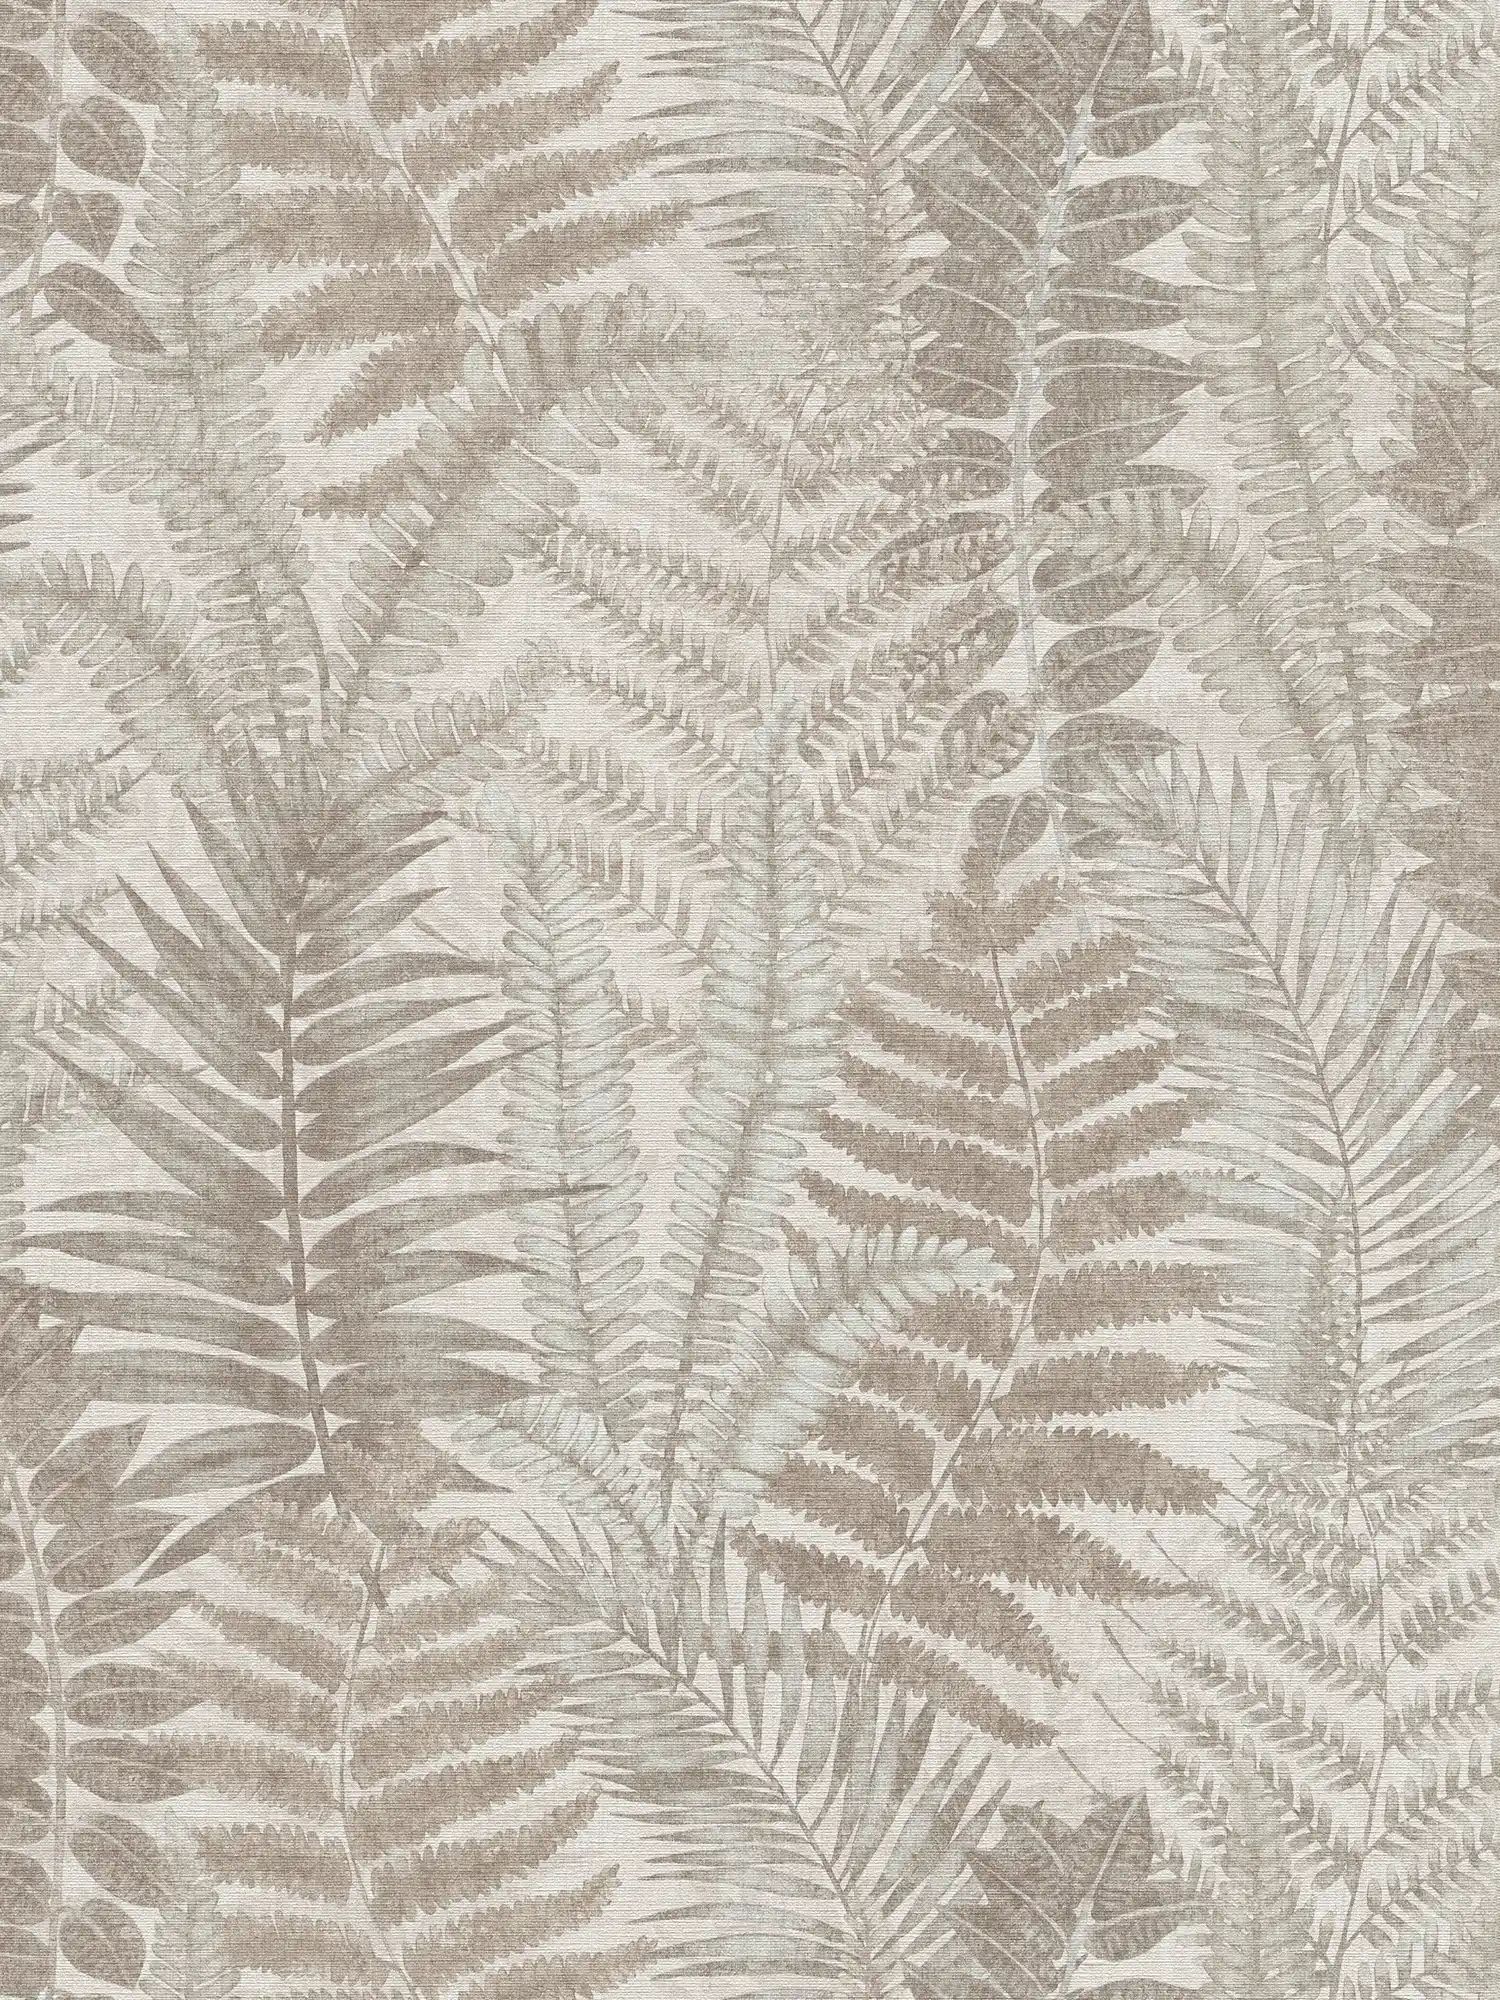 Papel pintado tejido-no tejido floral con hojas de helecho ligeramente texturado, mate - gris, beige, topo
